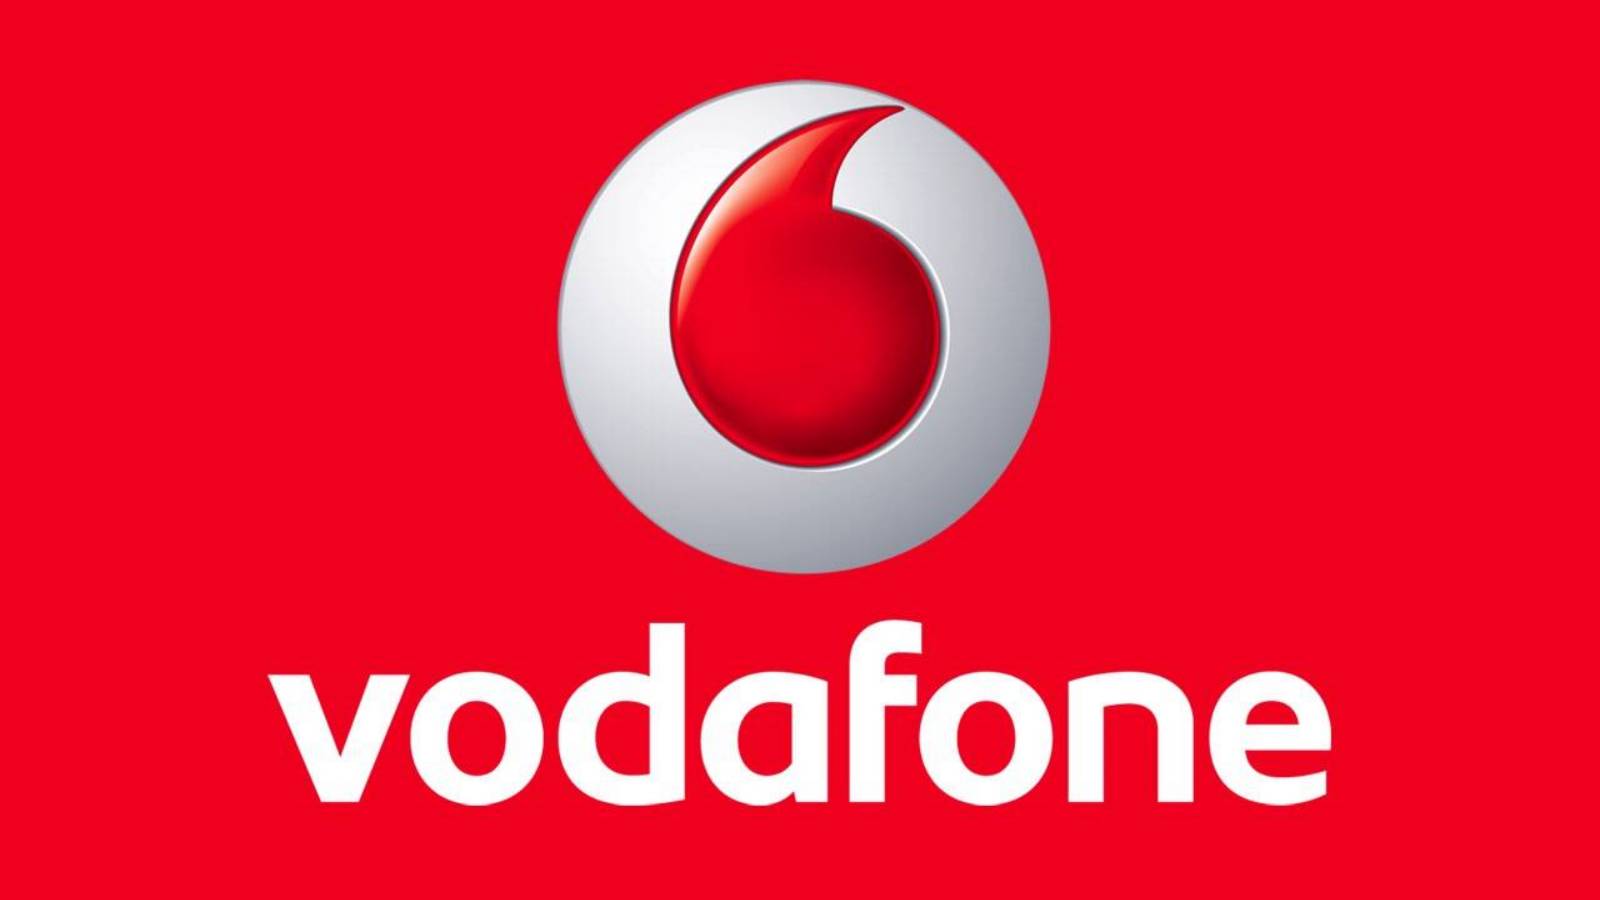 Vodafone covid-19